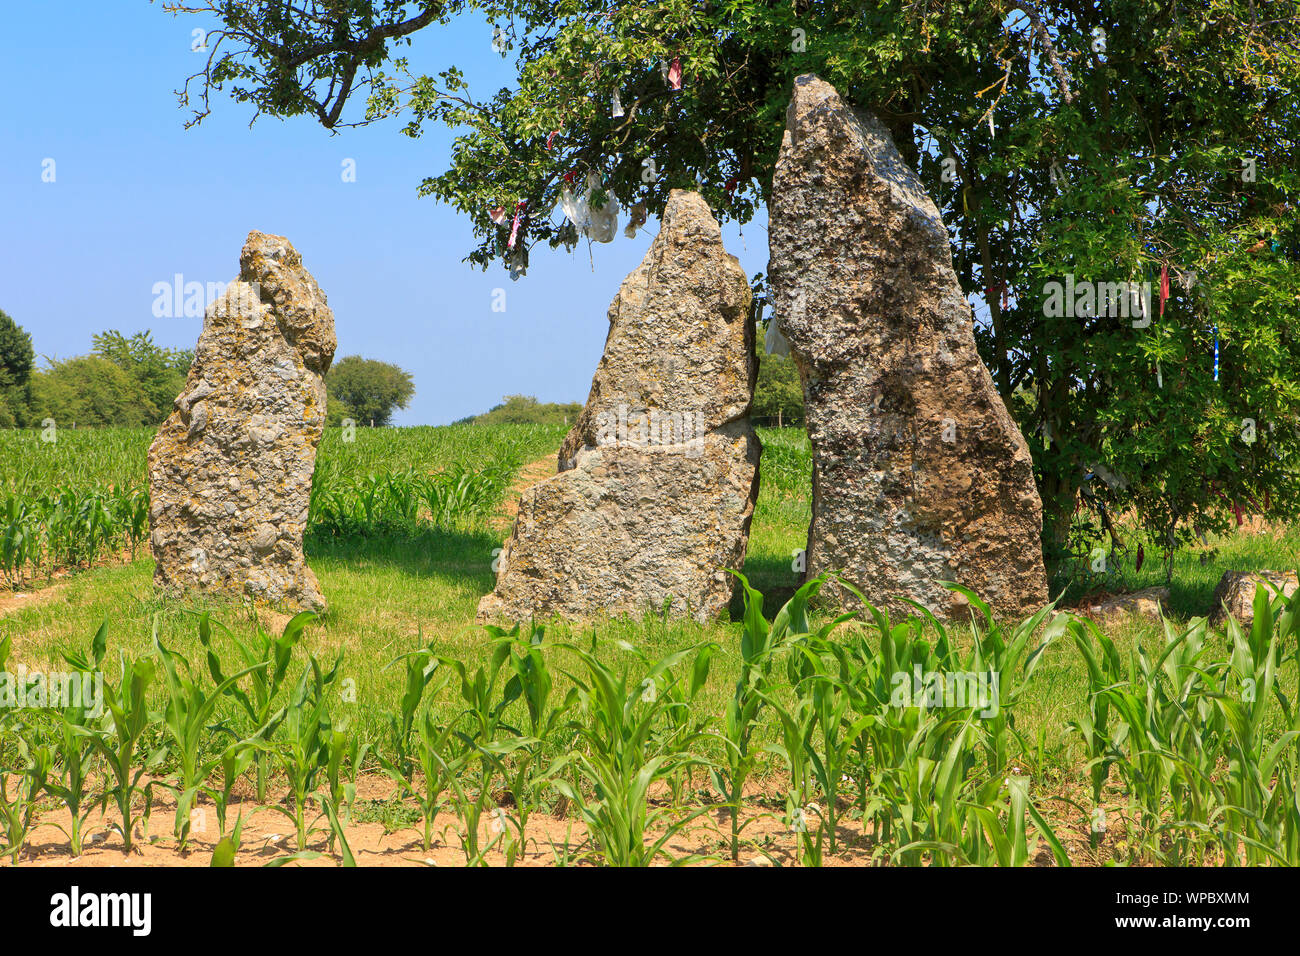 Le megalthic 3 menhirs d'Oppagne (3 Menhirs d'Oppagne) d'environ 3000 av. J.-C. (culture Seine-Oise-Marne) dans la région de Weris, Belgique Banque D'Images